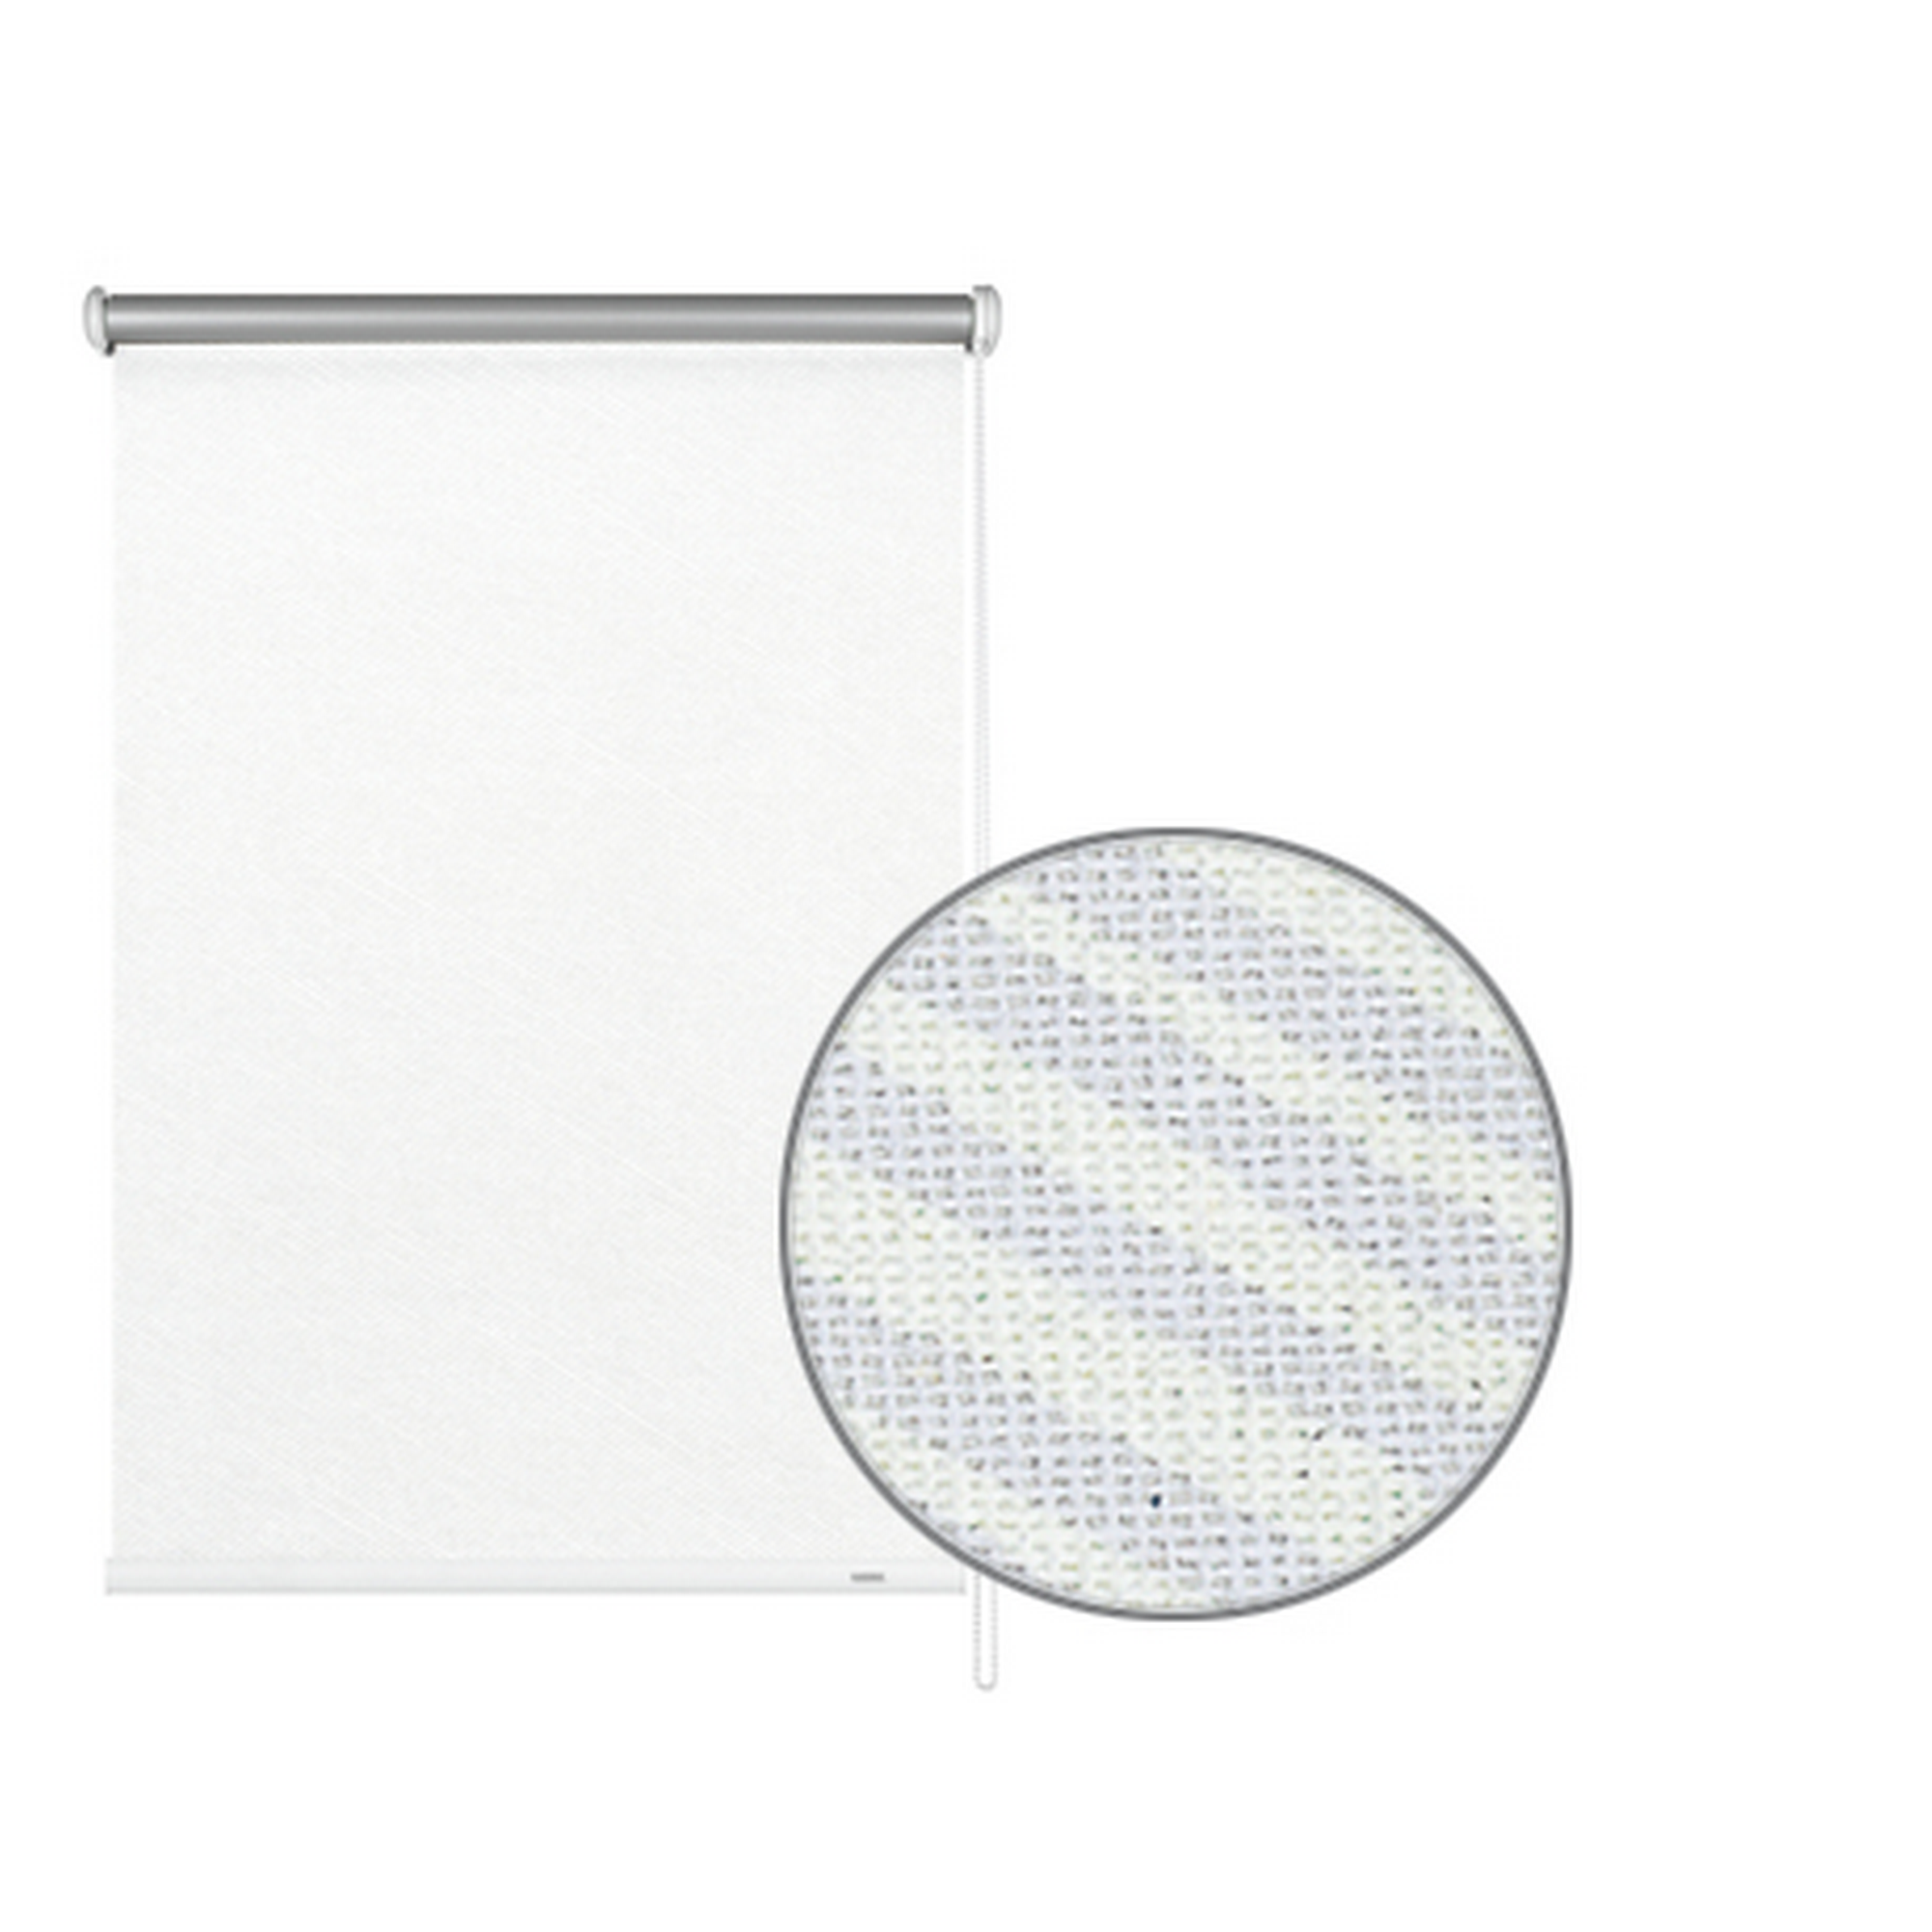 Seitenzug-Rollo 'Thermo energiesparend' Streifen weiß 142 x 180 cm + product picture